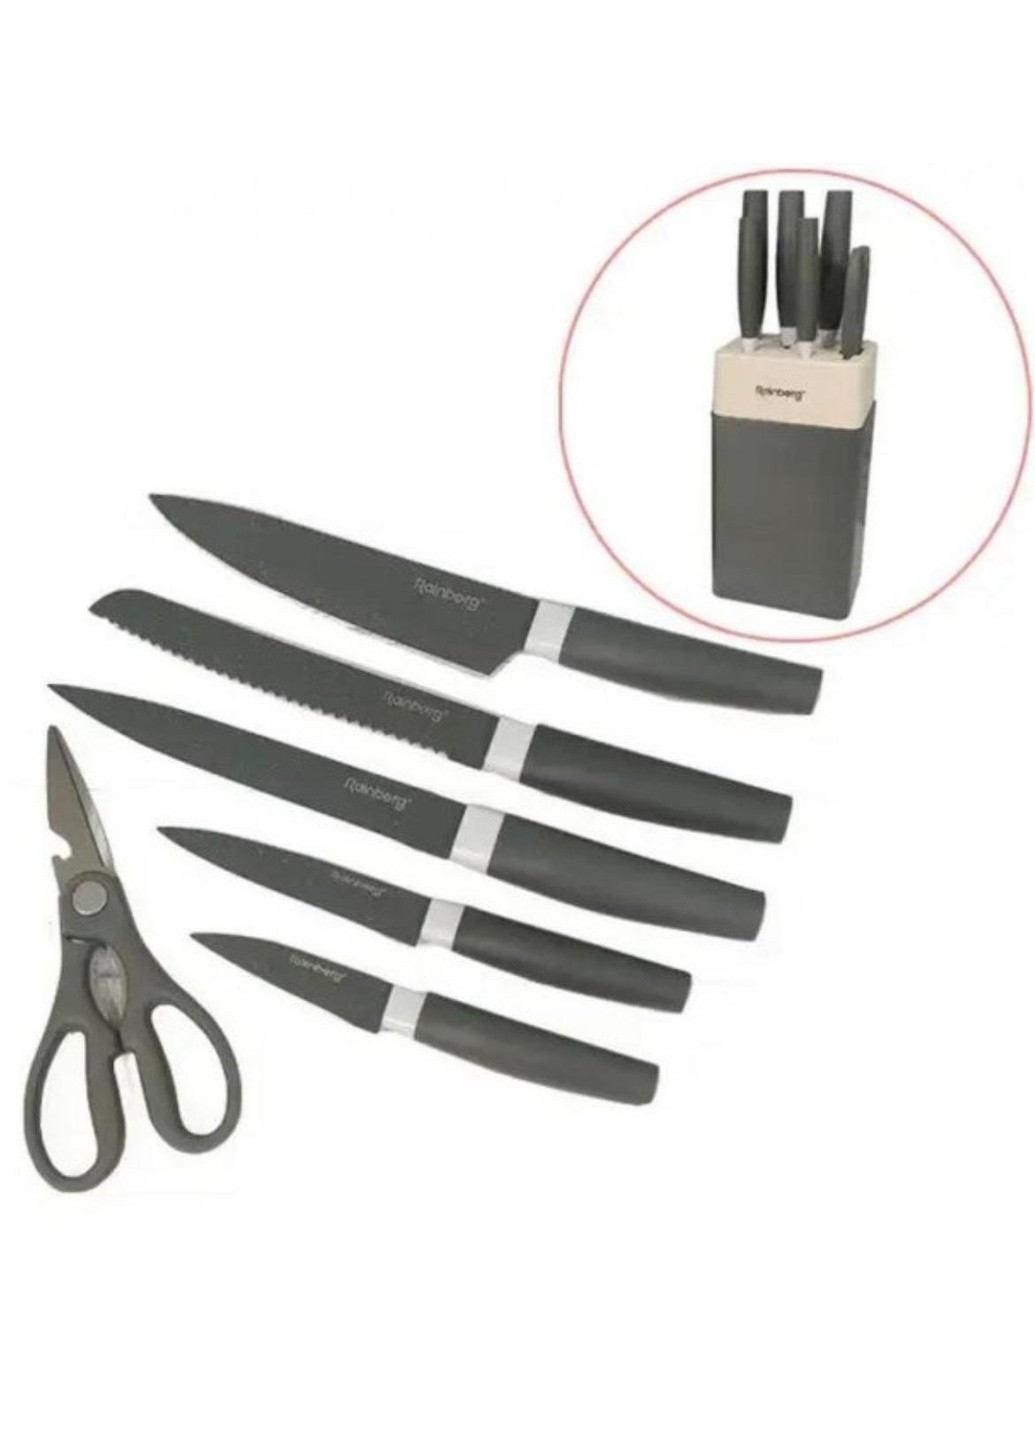 Практический набор кухонных ножей RB 8808 из 7 предметов с подставкой Rainberg чёрные, нержавеющая сталь